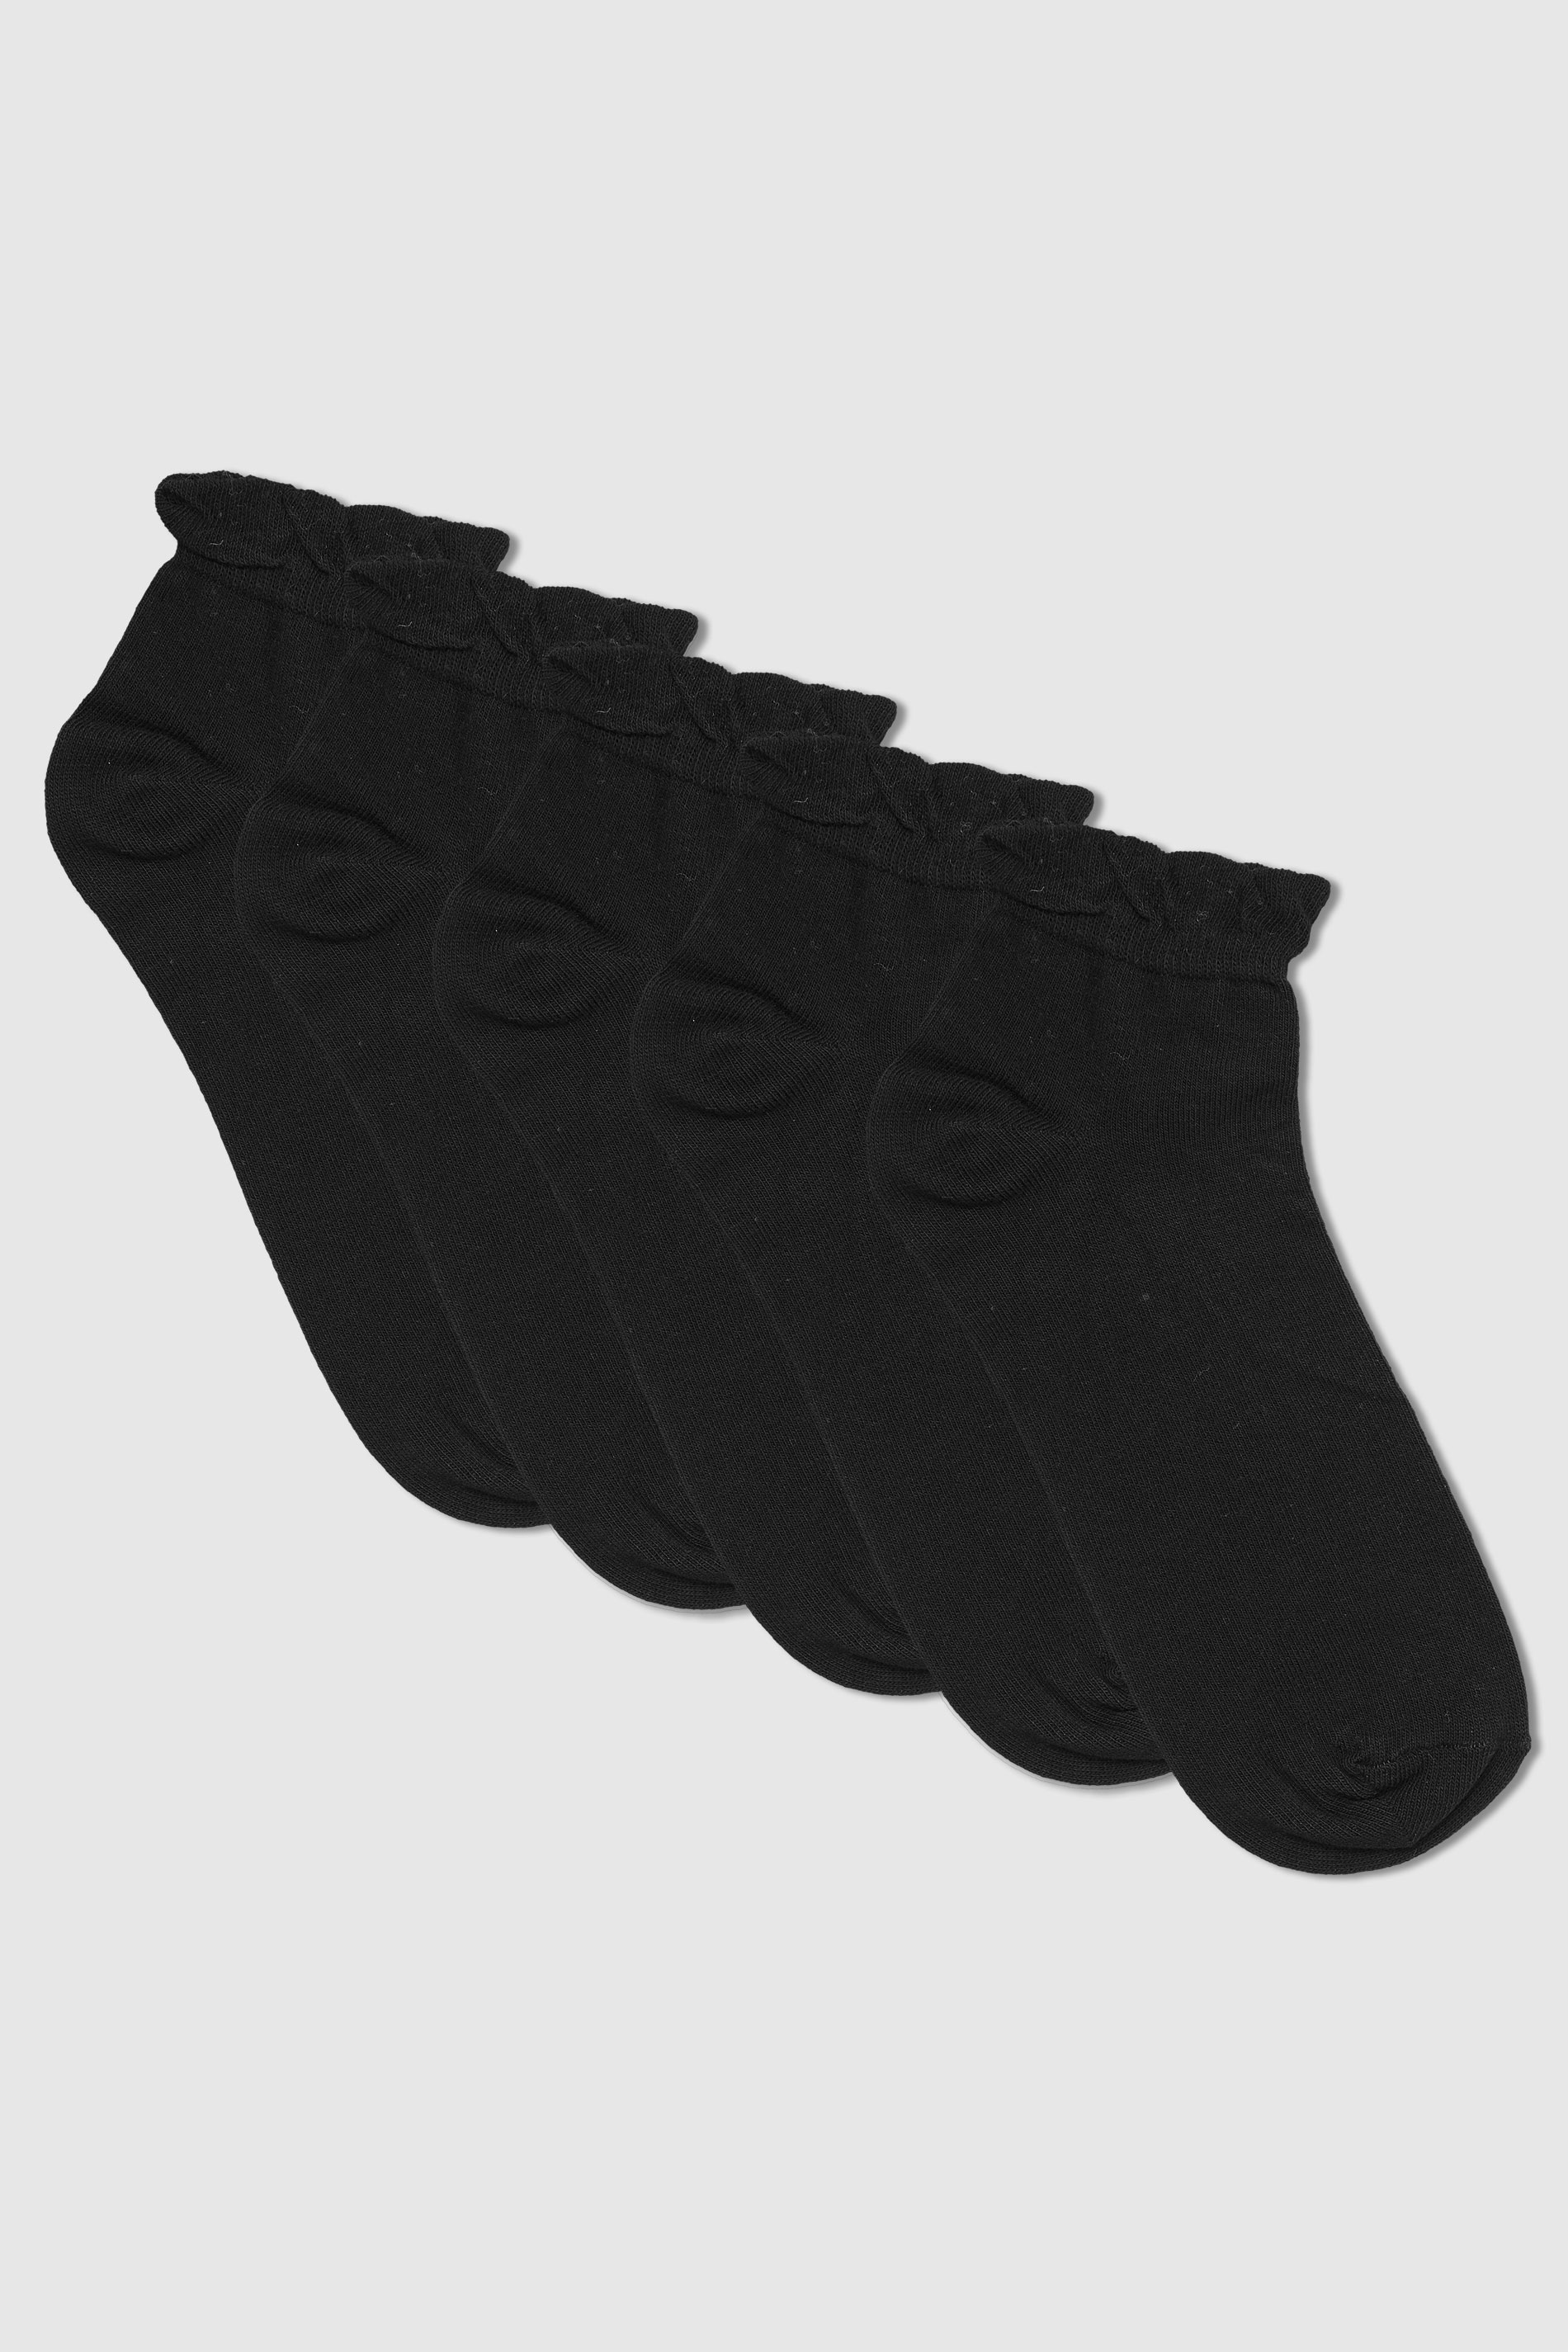 5 PACK Black Trainer Liner Socks 1